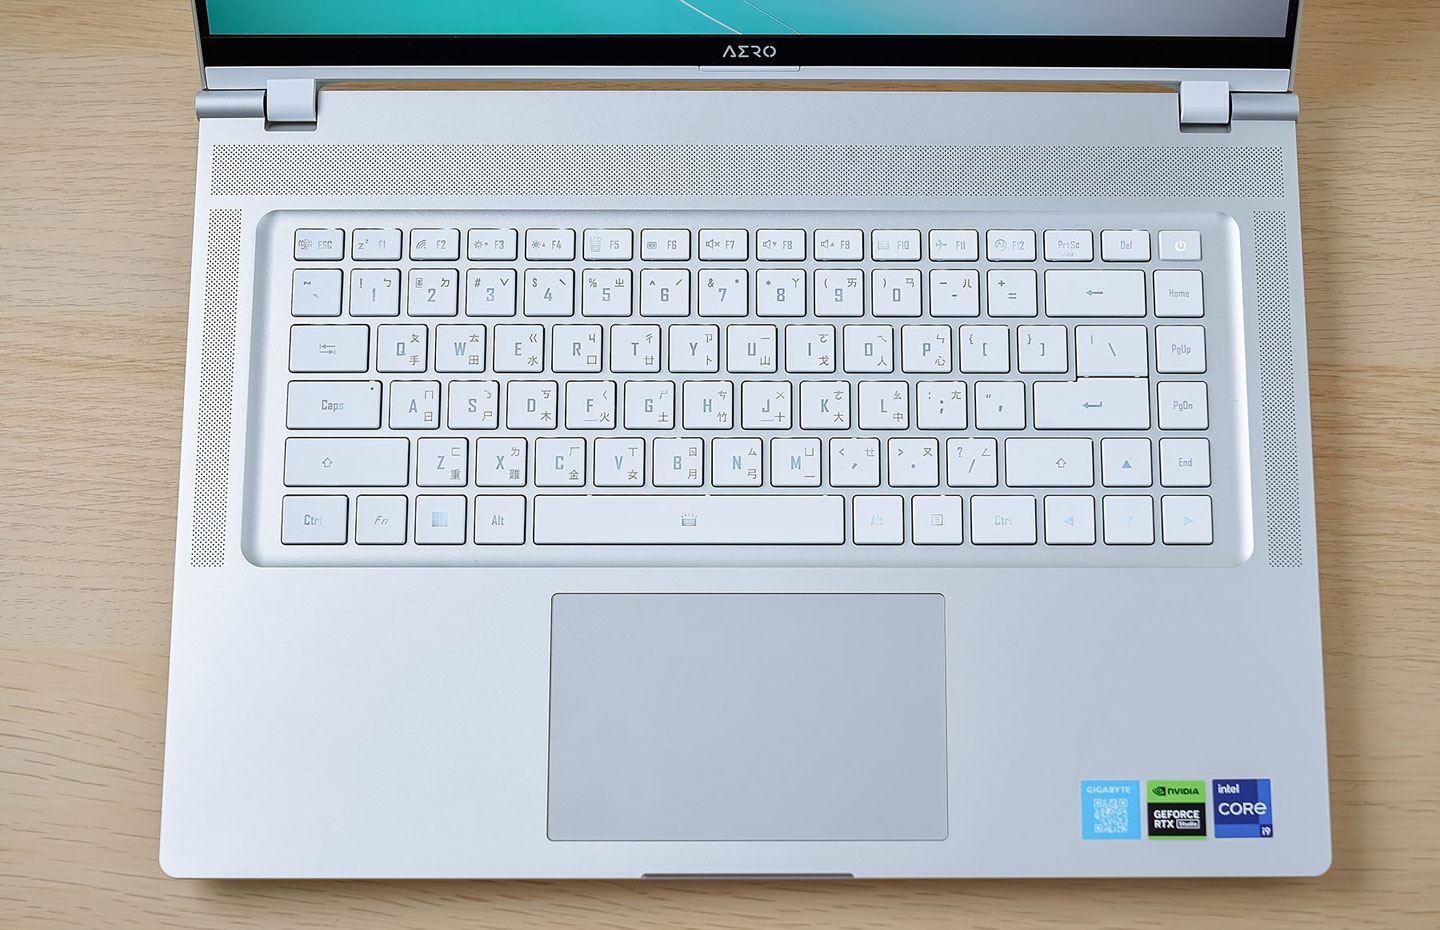 機身內側的 C 面也同樣為銀白色系，並搭配了鍵距合宜的孤島式鍵盤，白色鍵帽在視覺上也能與金屬機身的銀色完全契合。 ▲ 在鍵盤上方靠近螢幕 AERO LOGO 處有一個隱藏於網孔區塊的光源感測器，可以偵測環境亮度自動調校螢幕的顯示設定。 ▲ AERO 16 OLED 的鍵盤擁有 1.7 mm 的長鍵程，打字時的回饋感合宜，使用起來非常舒適。